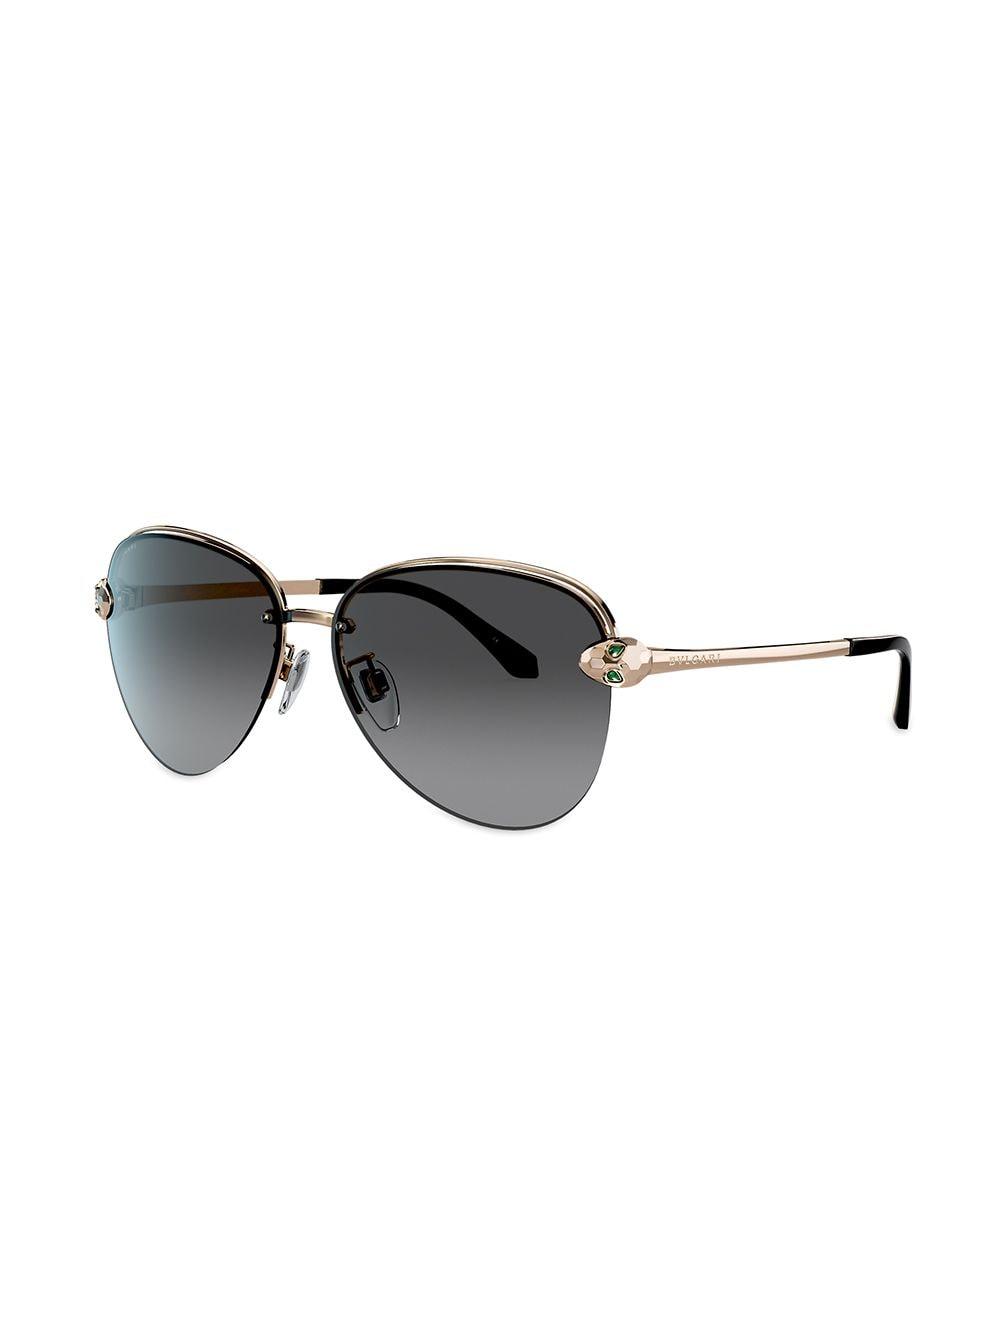 BVLGARI Aviator Sunglasses in Gold (Metallic) - Lyst